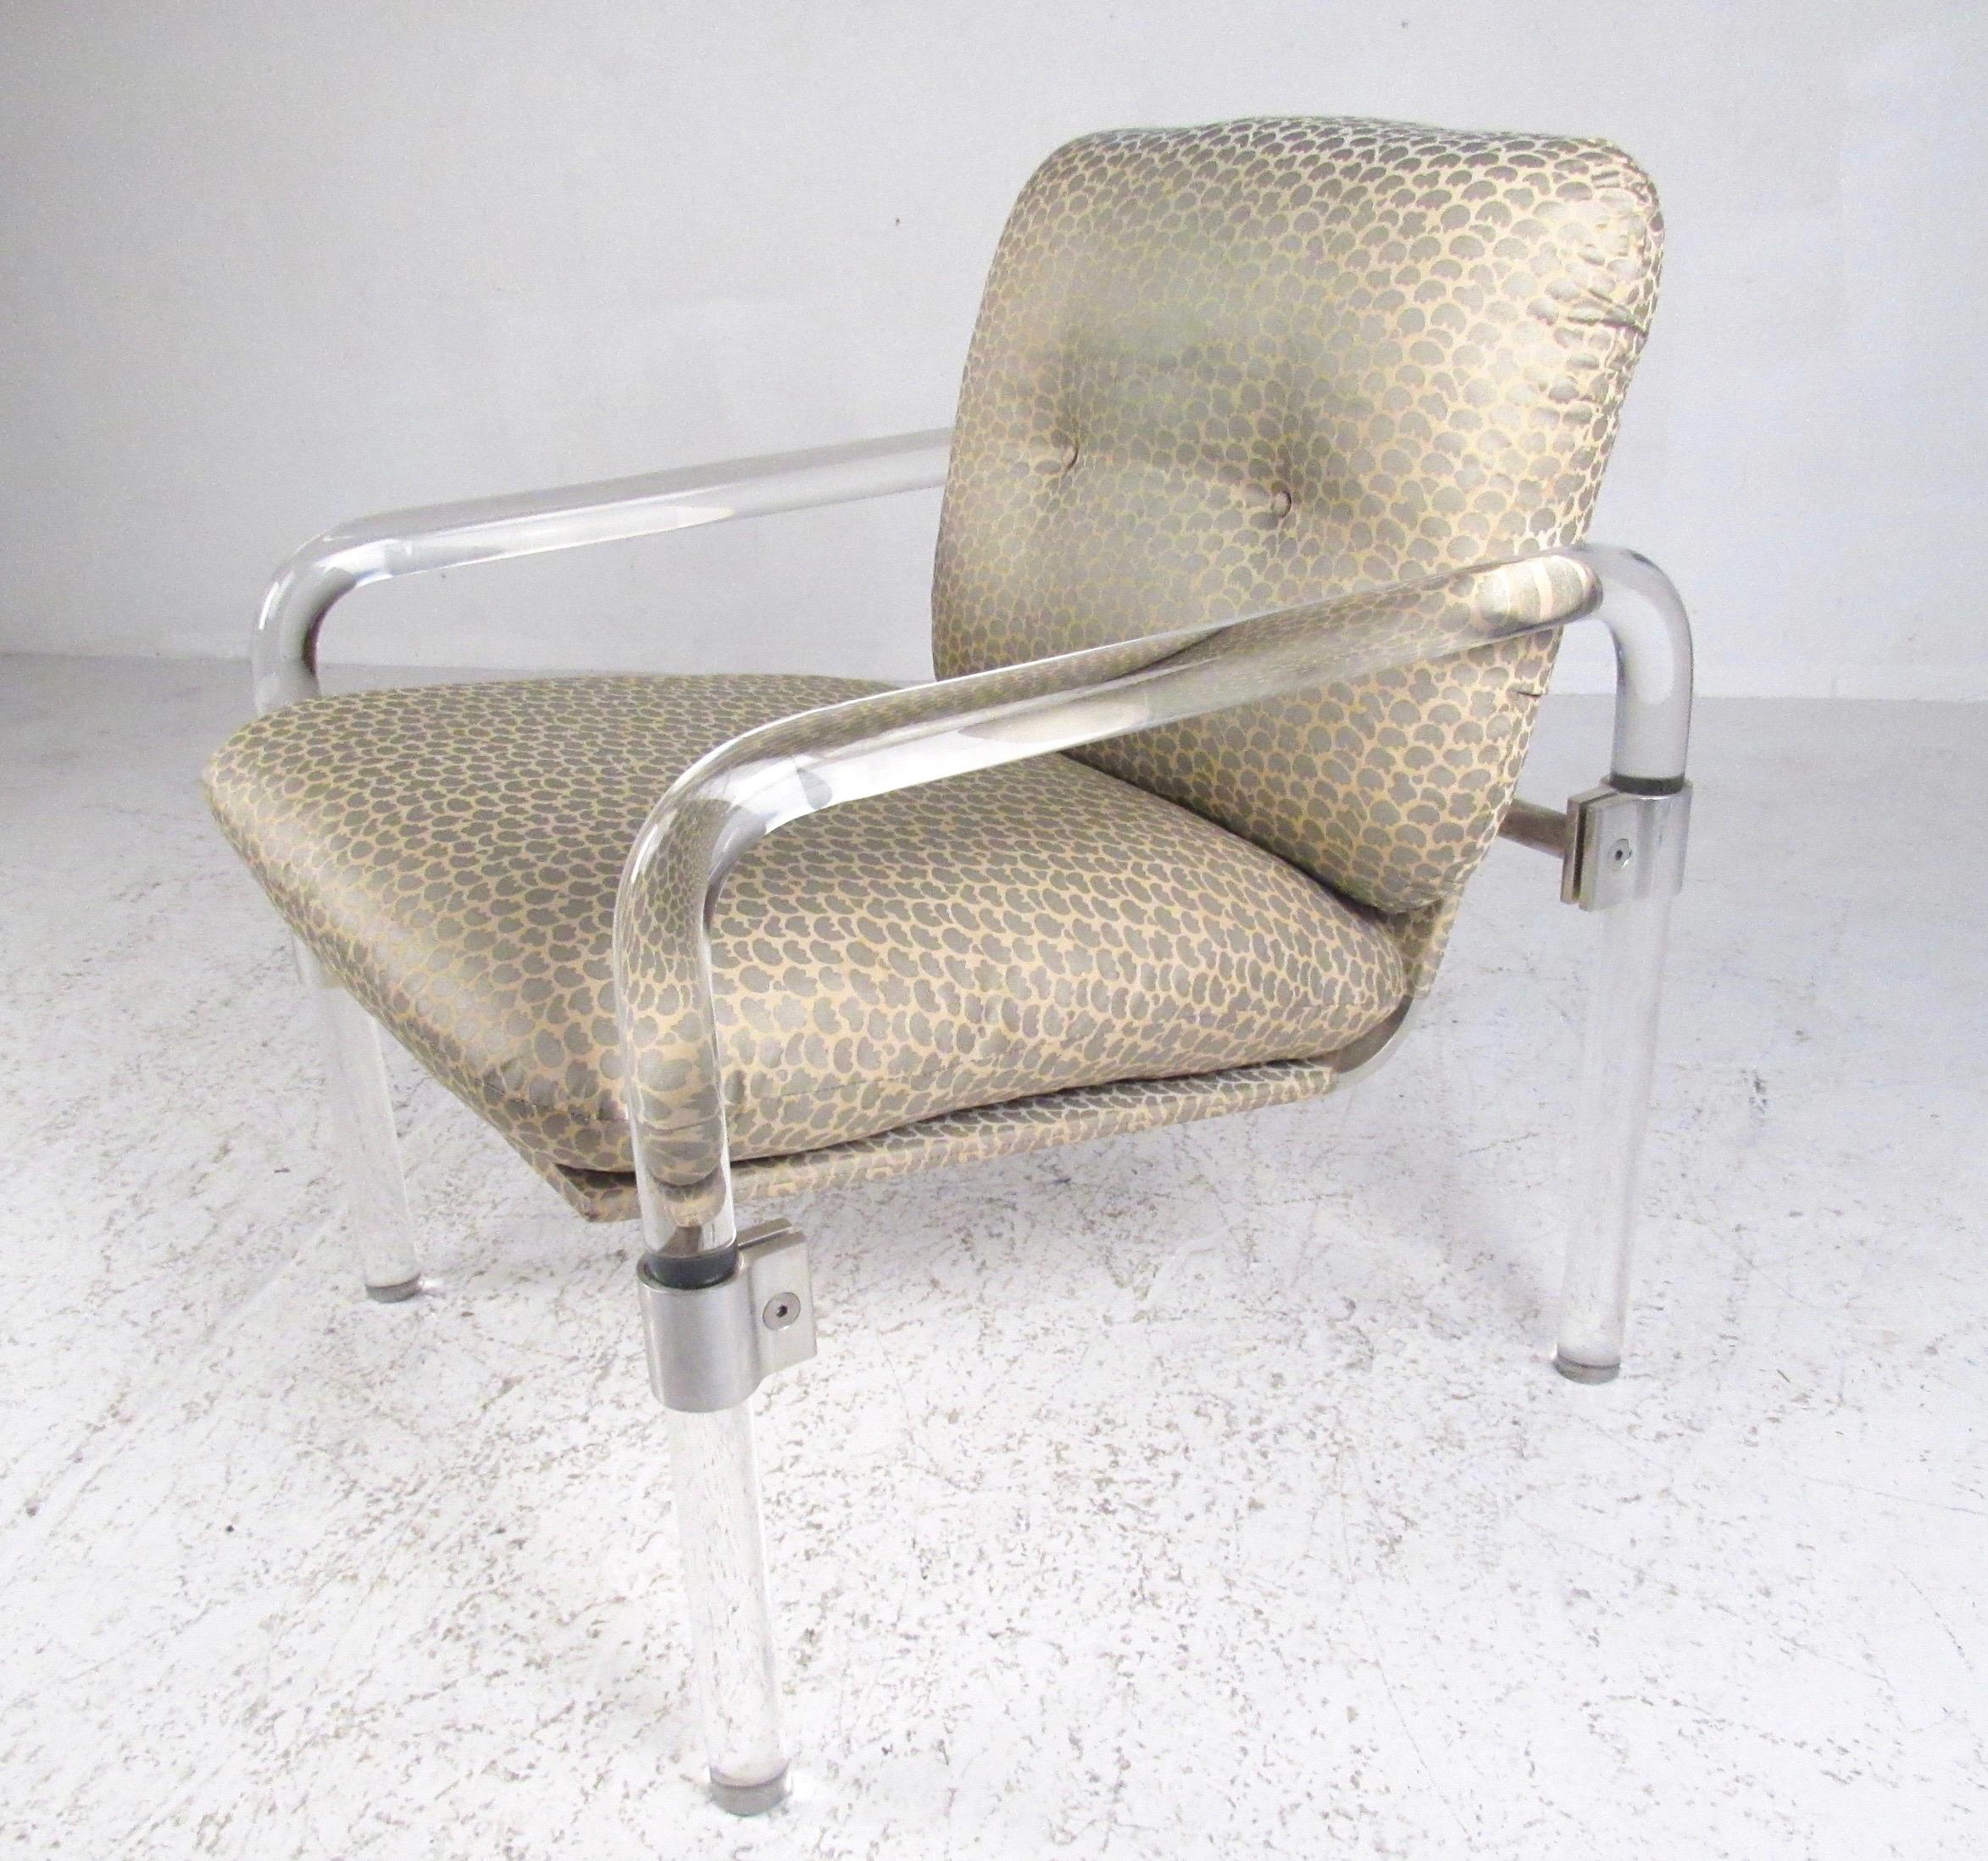 Dieser auffällige Designer-Sessel verfügt über einen formschönen Lucite-Rahmen mit Stahlbeschlägen, der durch einen schönen Vintage-Stoff ergänzt wird. Signiert von dem Designer Jeff Messerschmidt, 1977. Teil seiner 